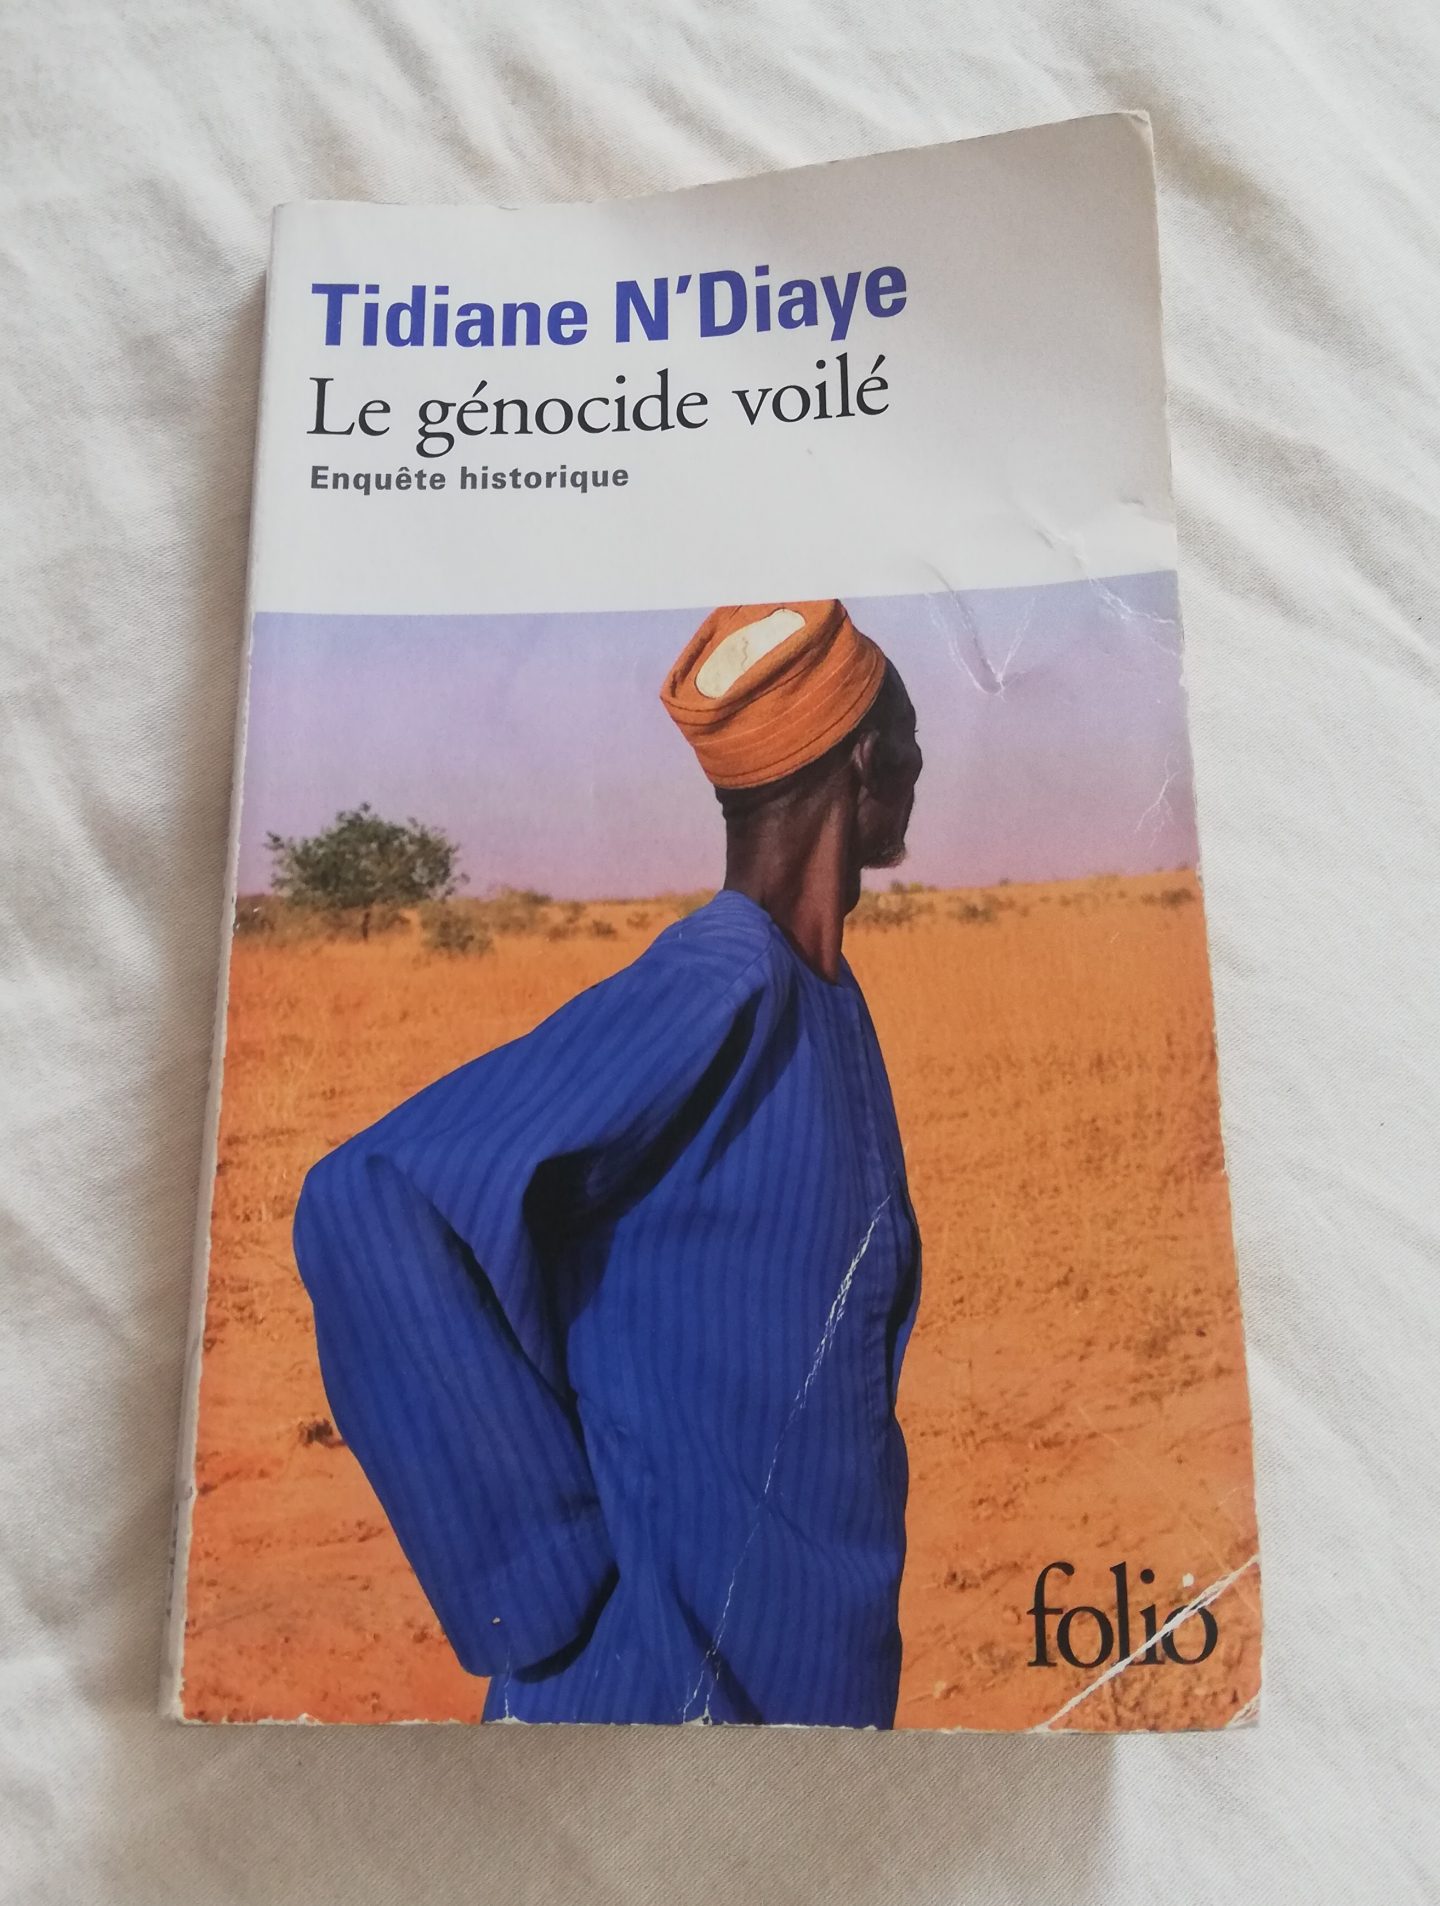 Tidiane N'Diaye "Le génocide voilé"